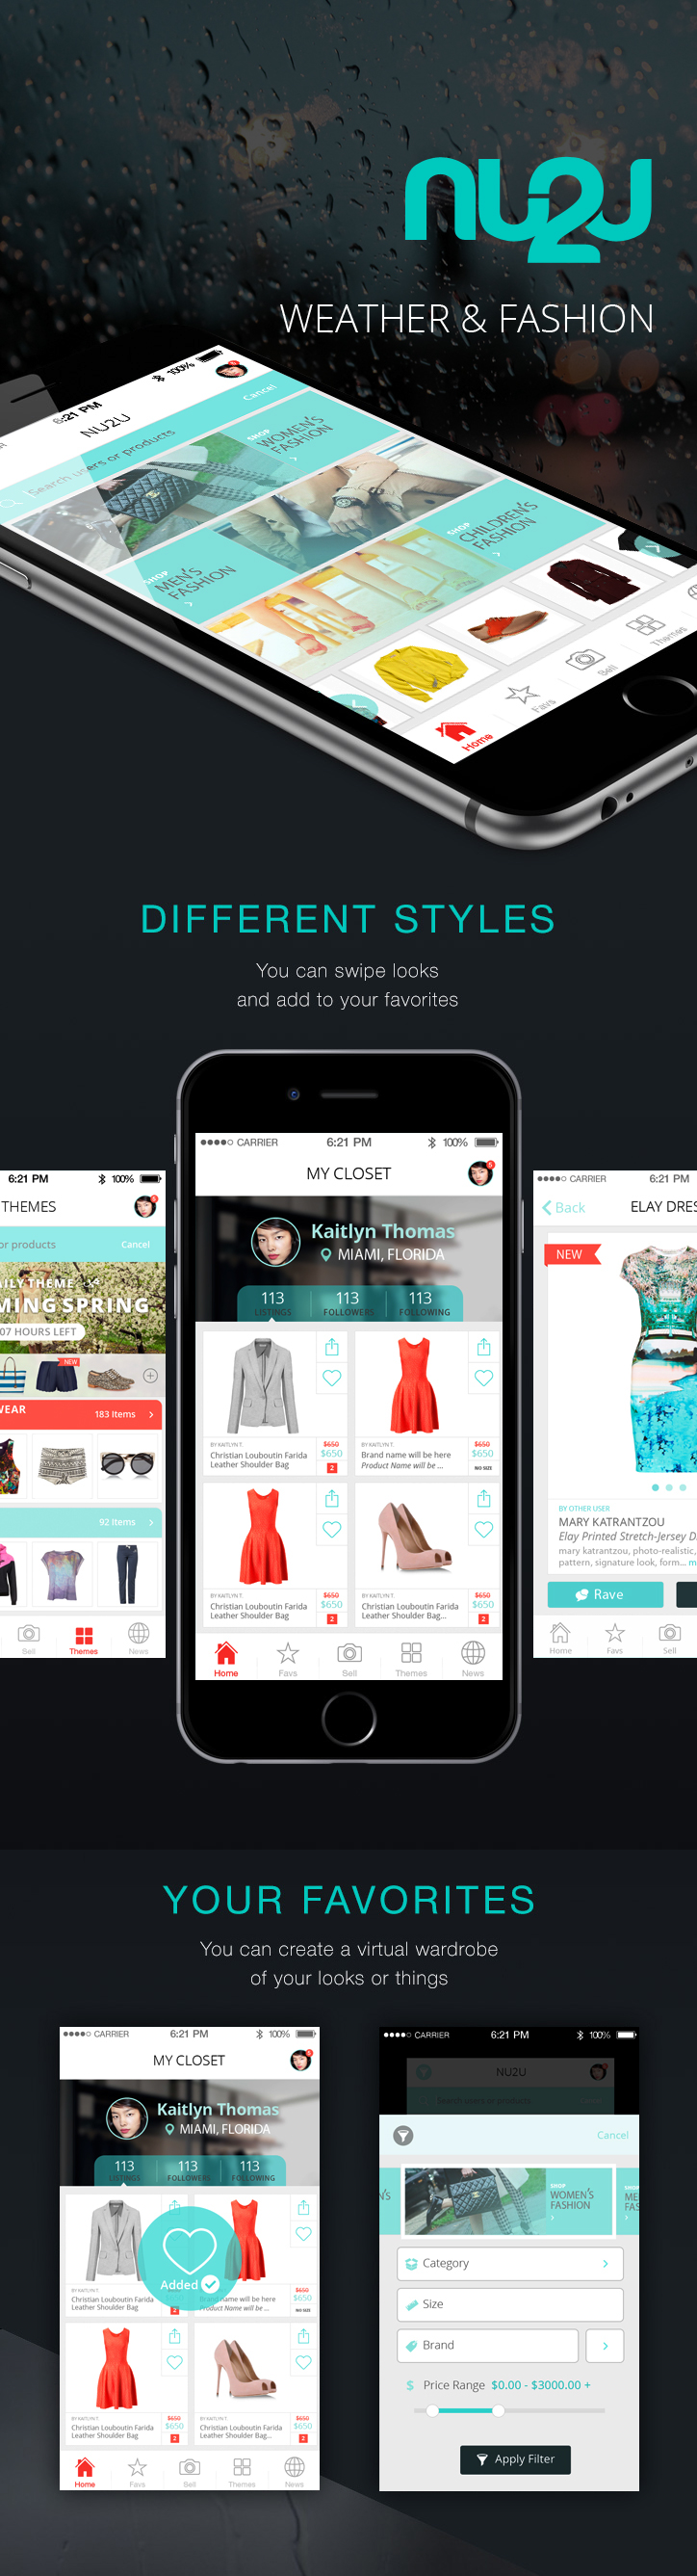 Mobile app Shopping dress apps